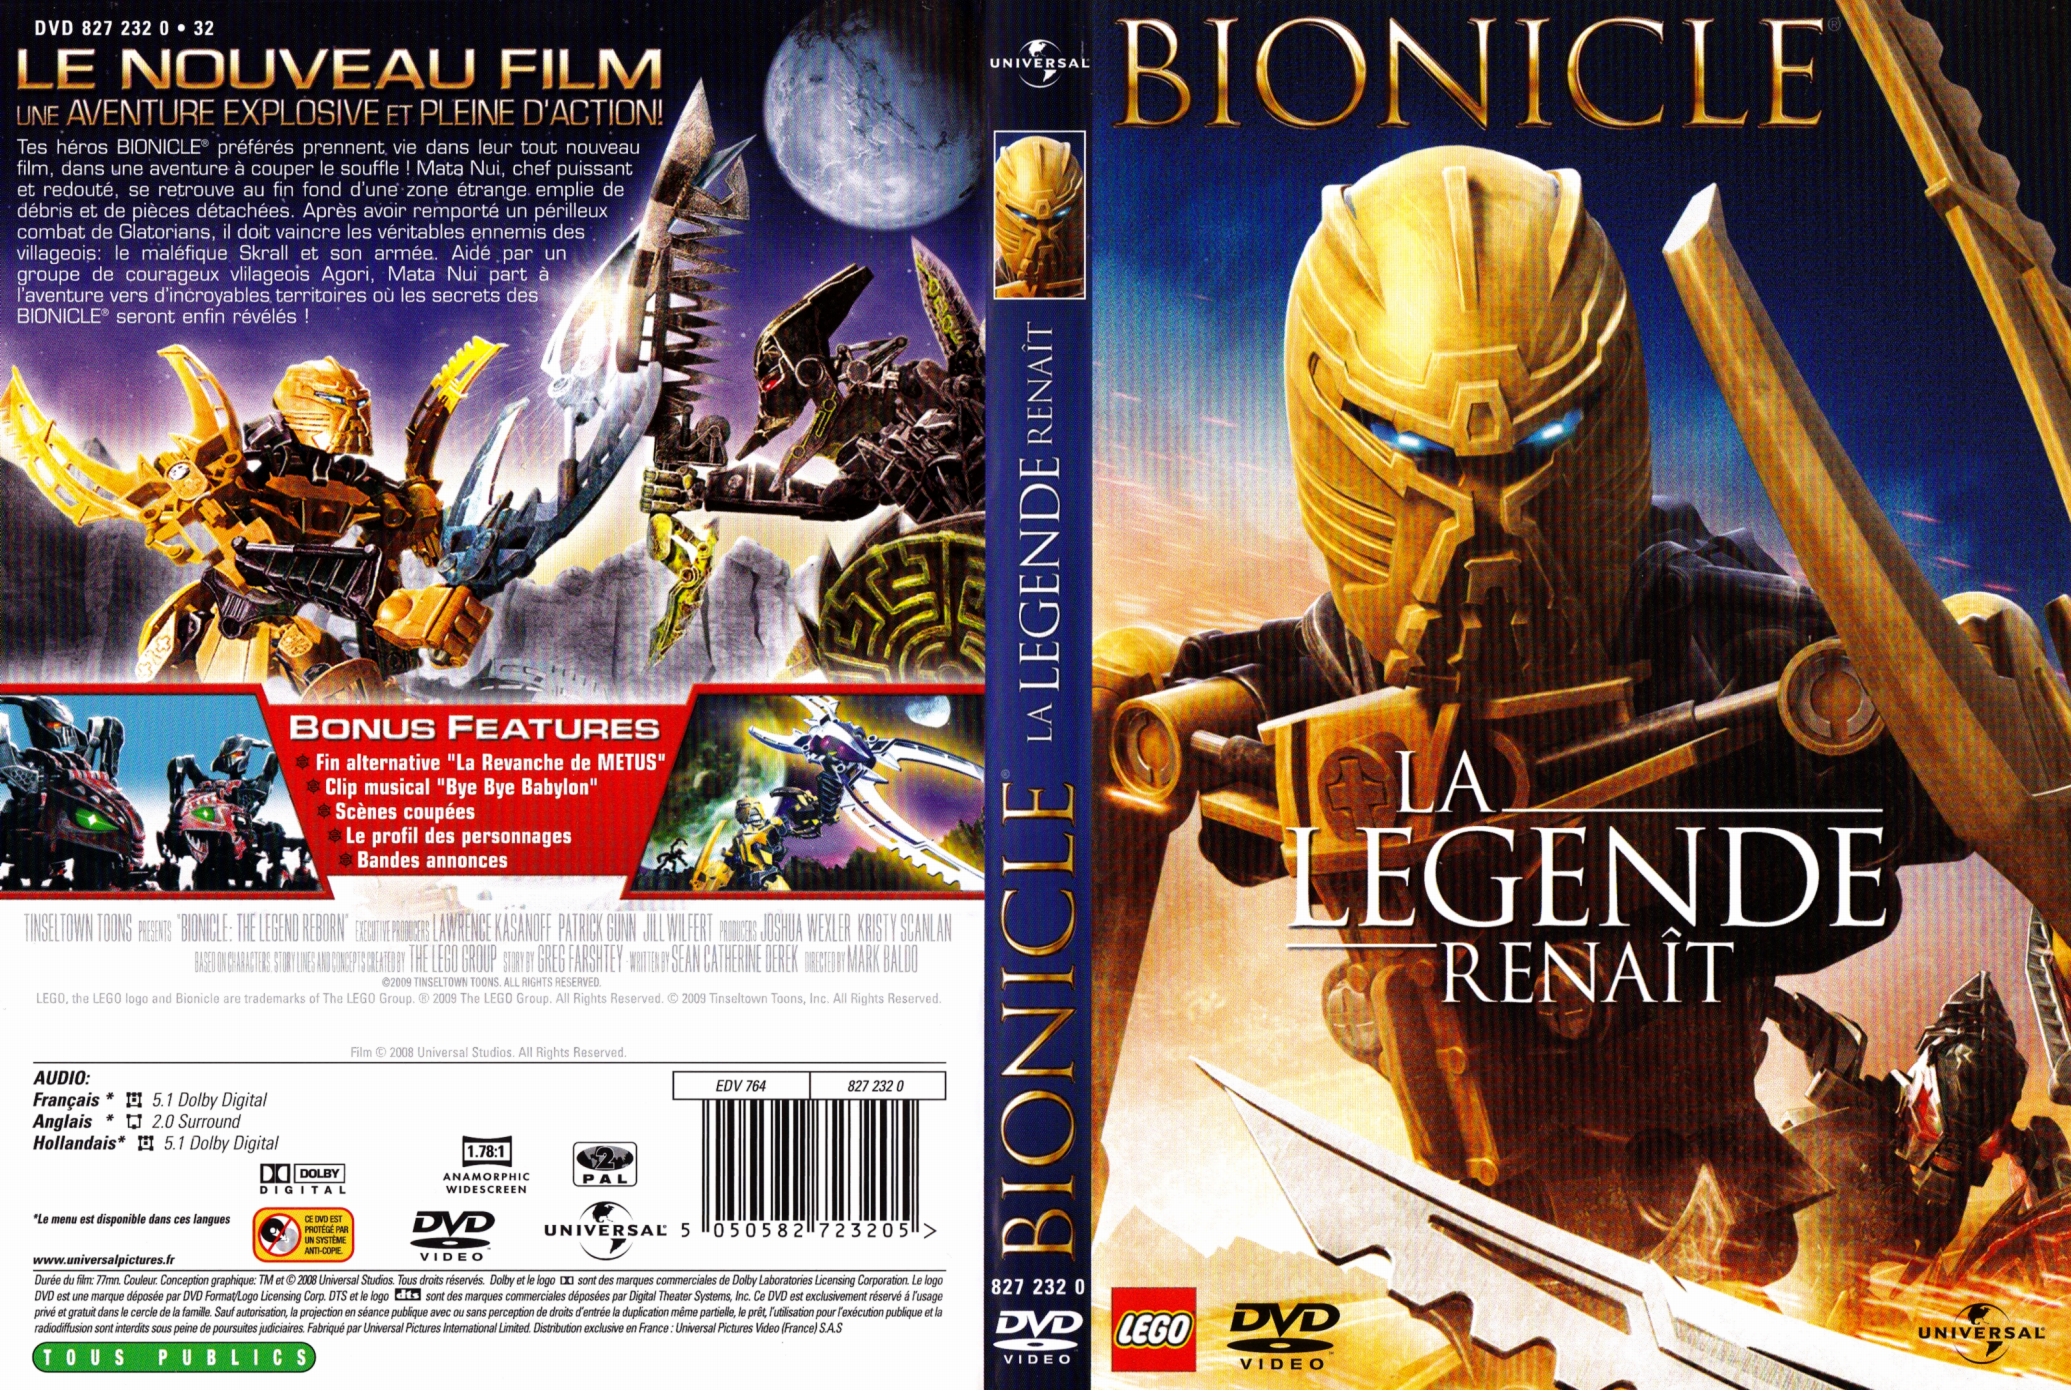 Jaquette DVD Bionicle La lgende renait